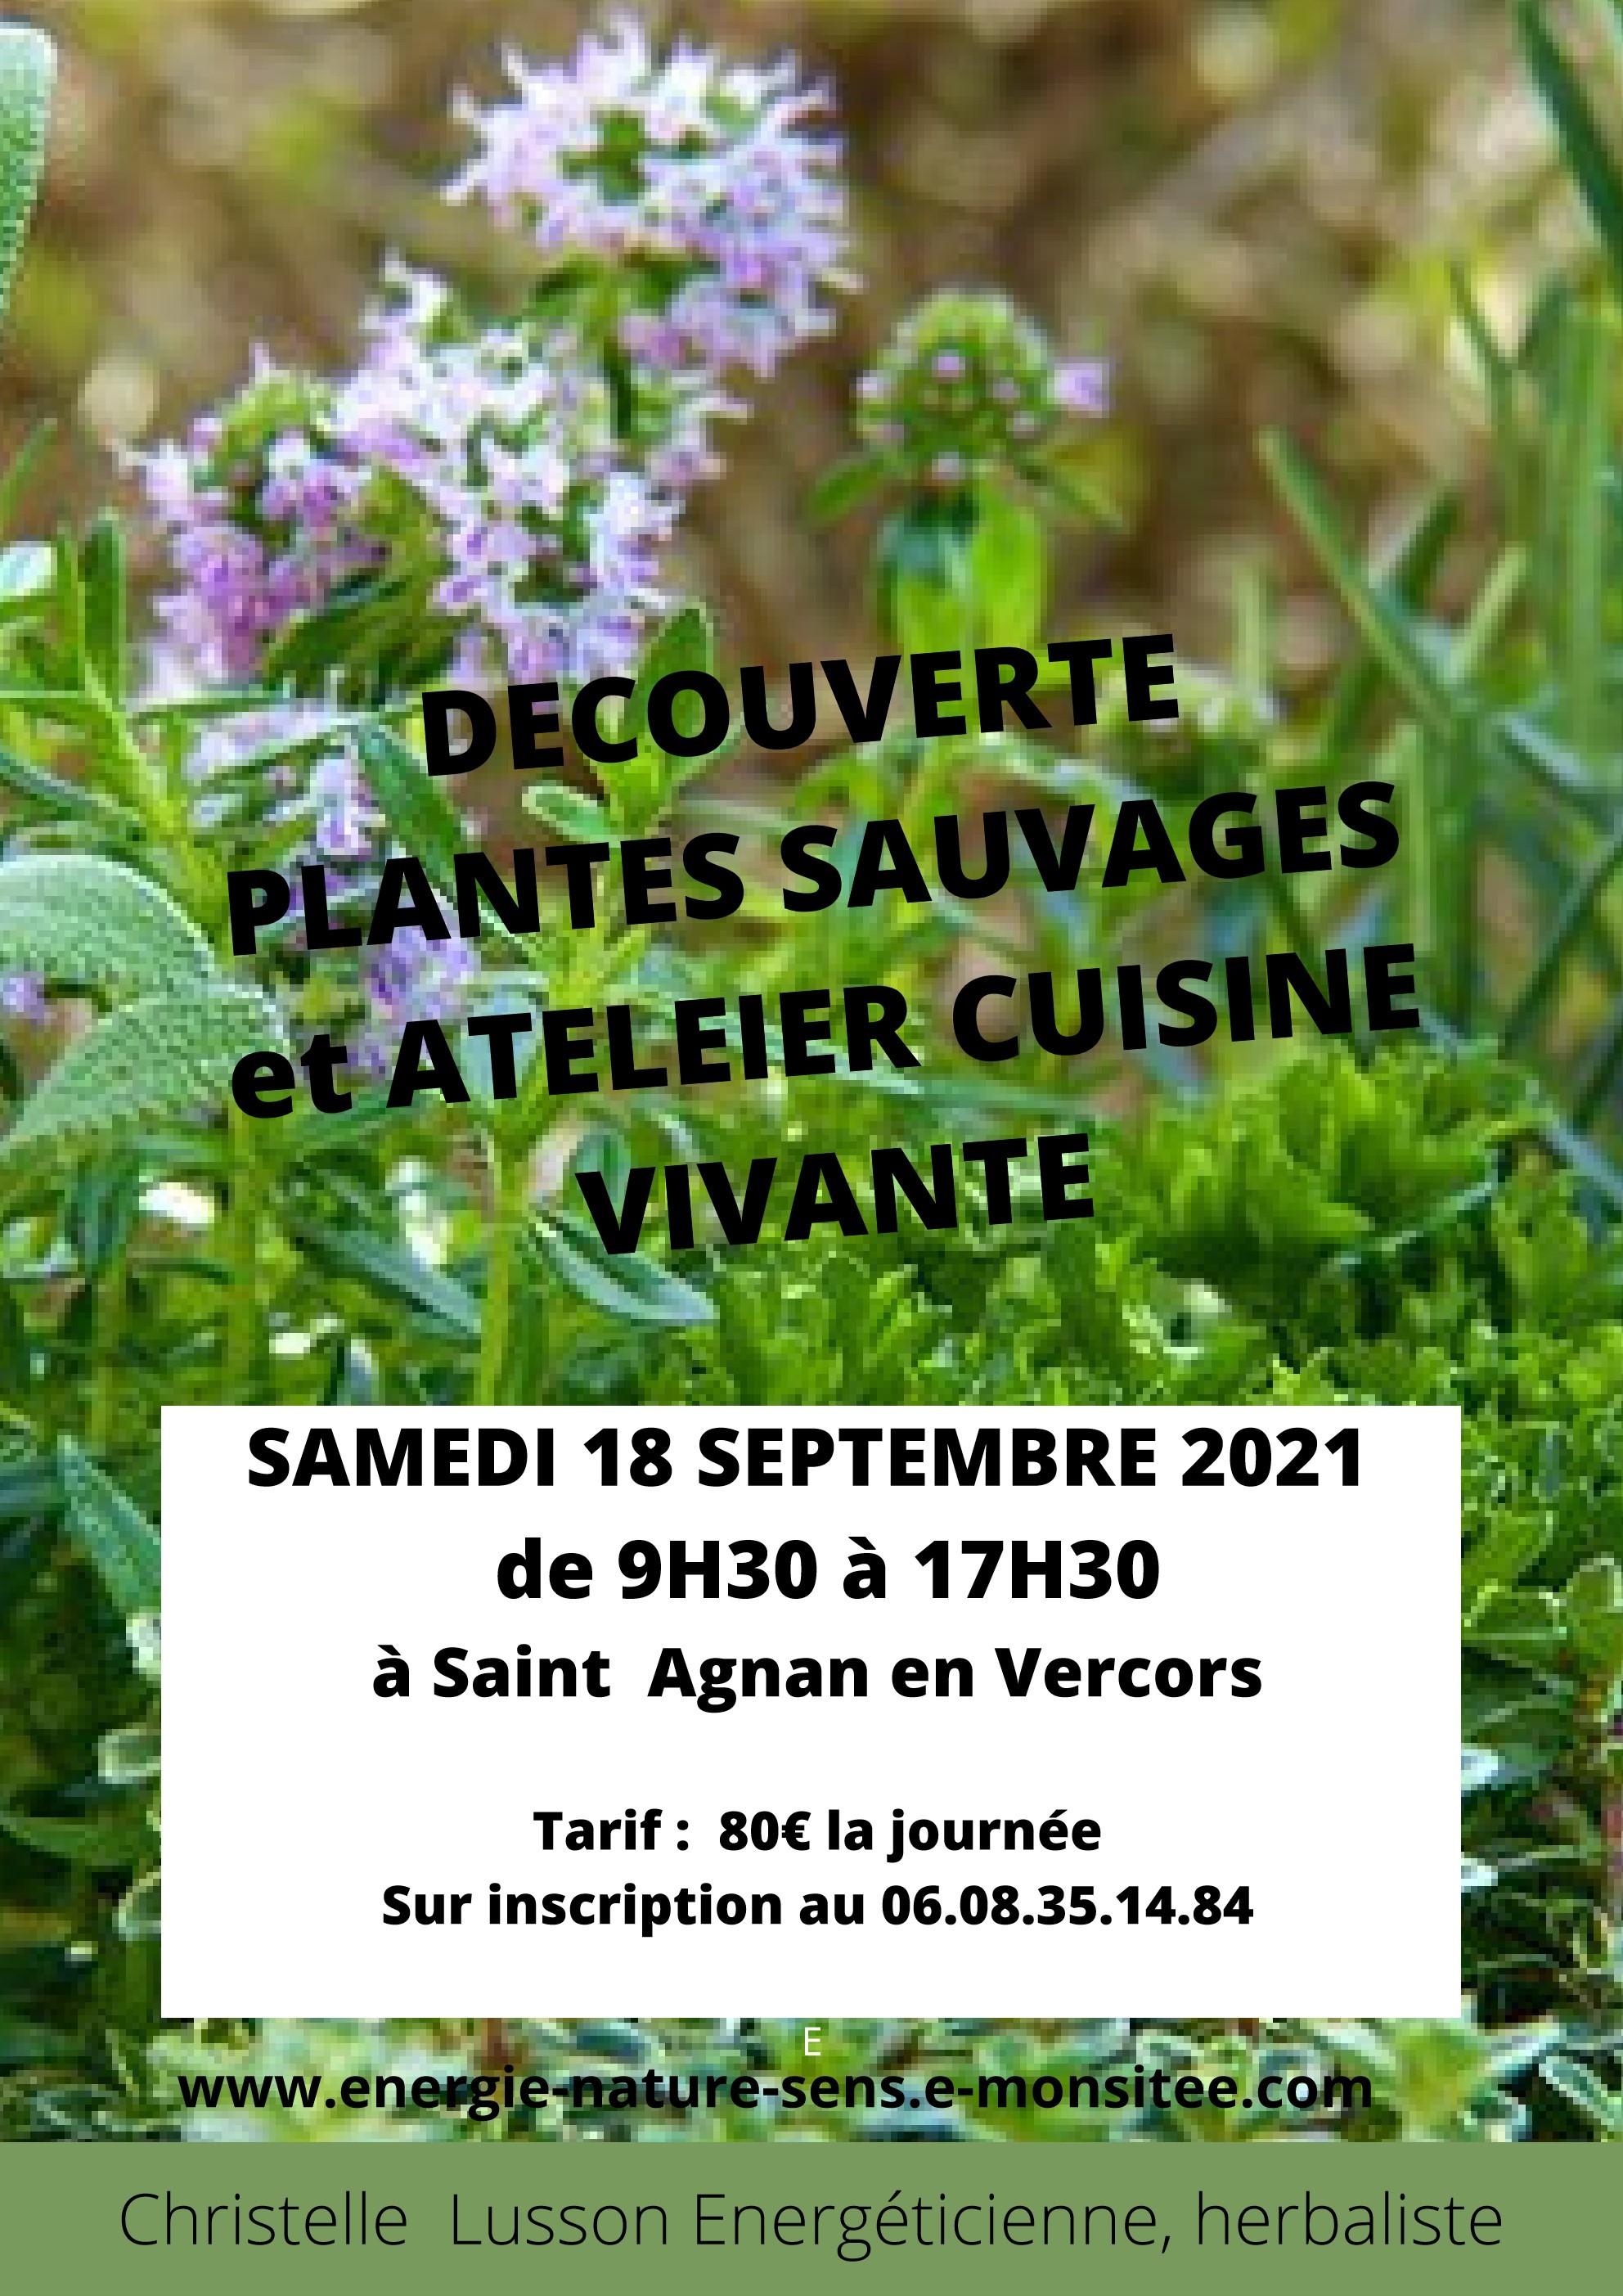 Decouverte plantes sauvages et atelier cuisine vivante samedi 18 sept 2021 1